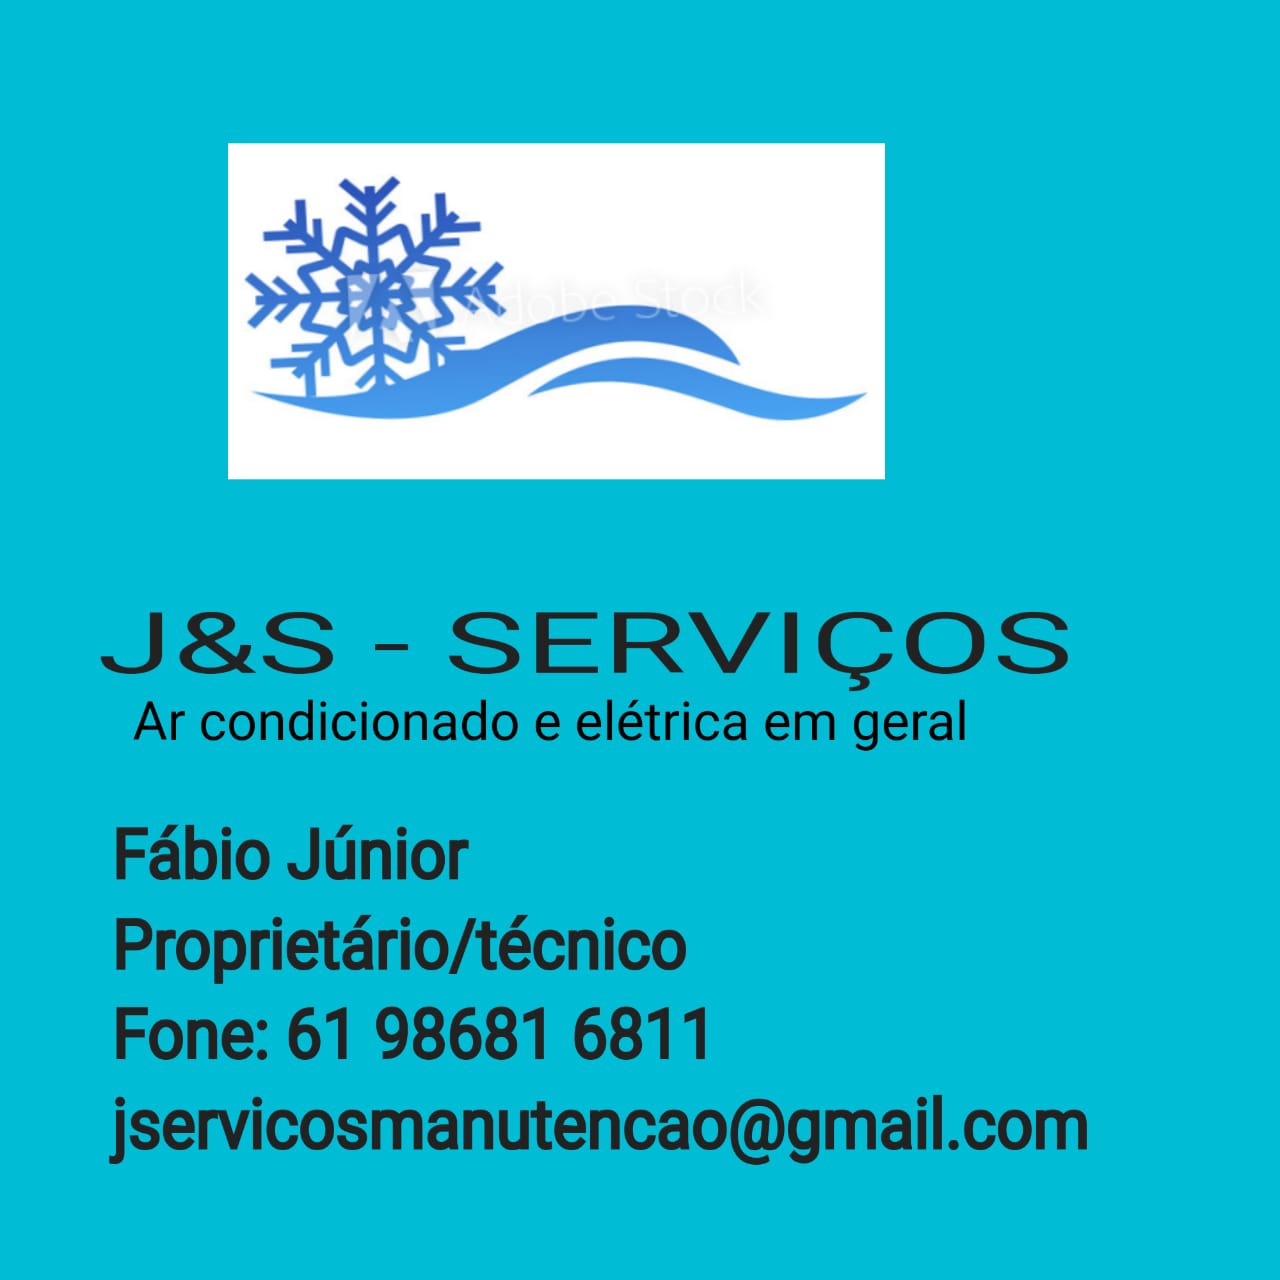 J&S - Serviços